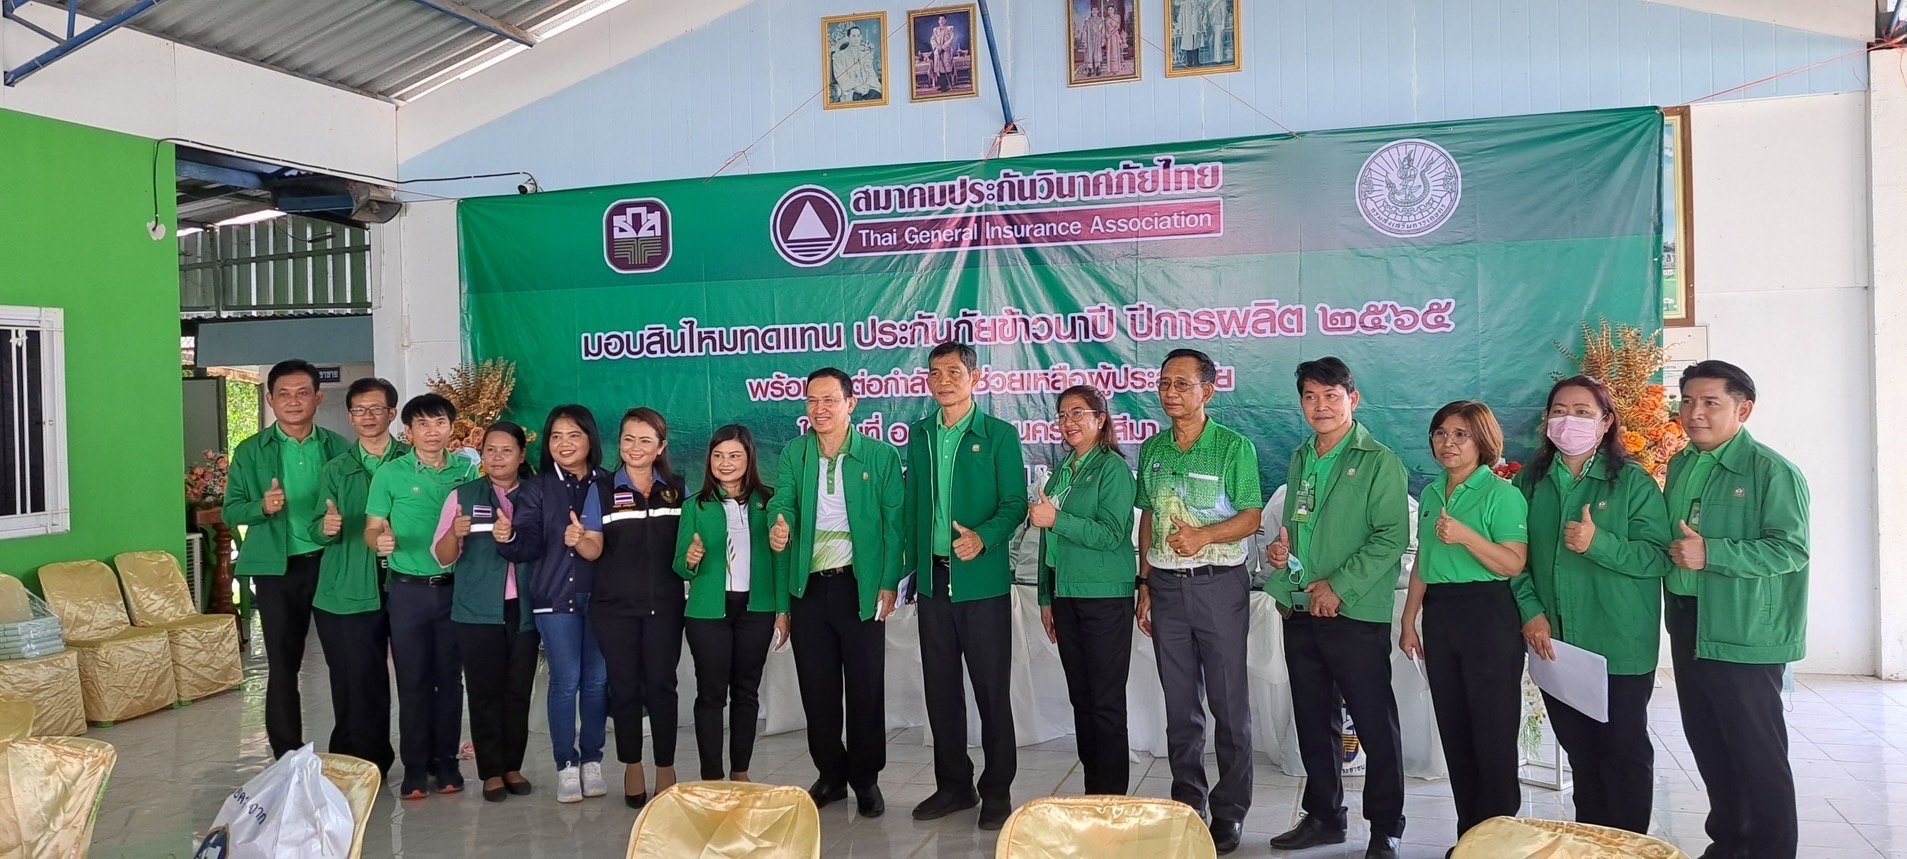 ธ.ก.ส. ร่วมสมาคมประกันวินาศภัยไทย มอบสินไหมทดแทนประกันภัยข้าวให้เกษตรกรผู้ประสบอุทกภัย จังหวัดนครราชสีมา